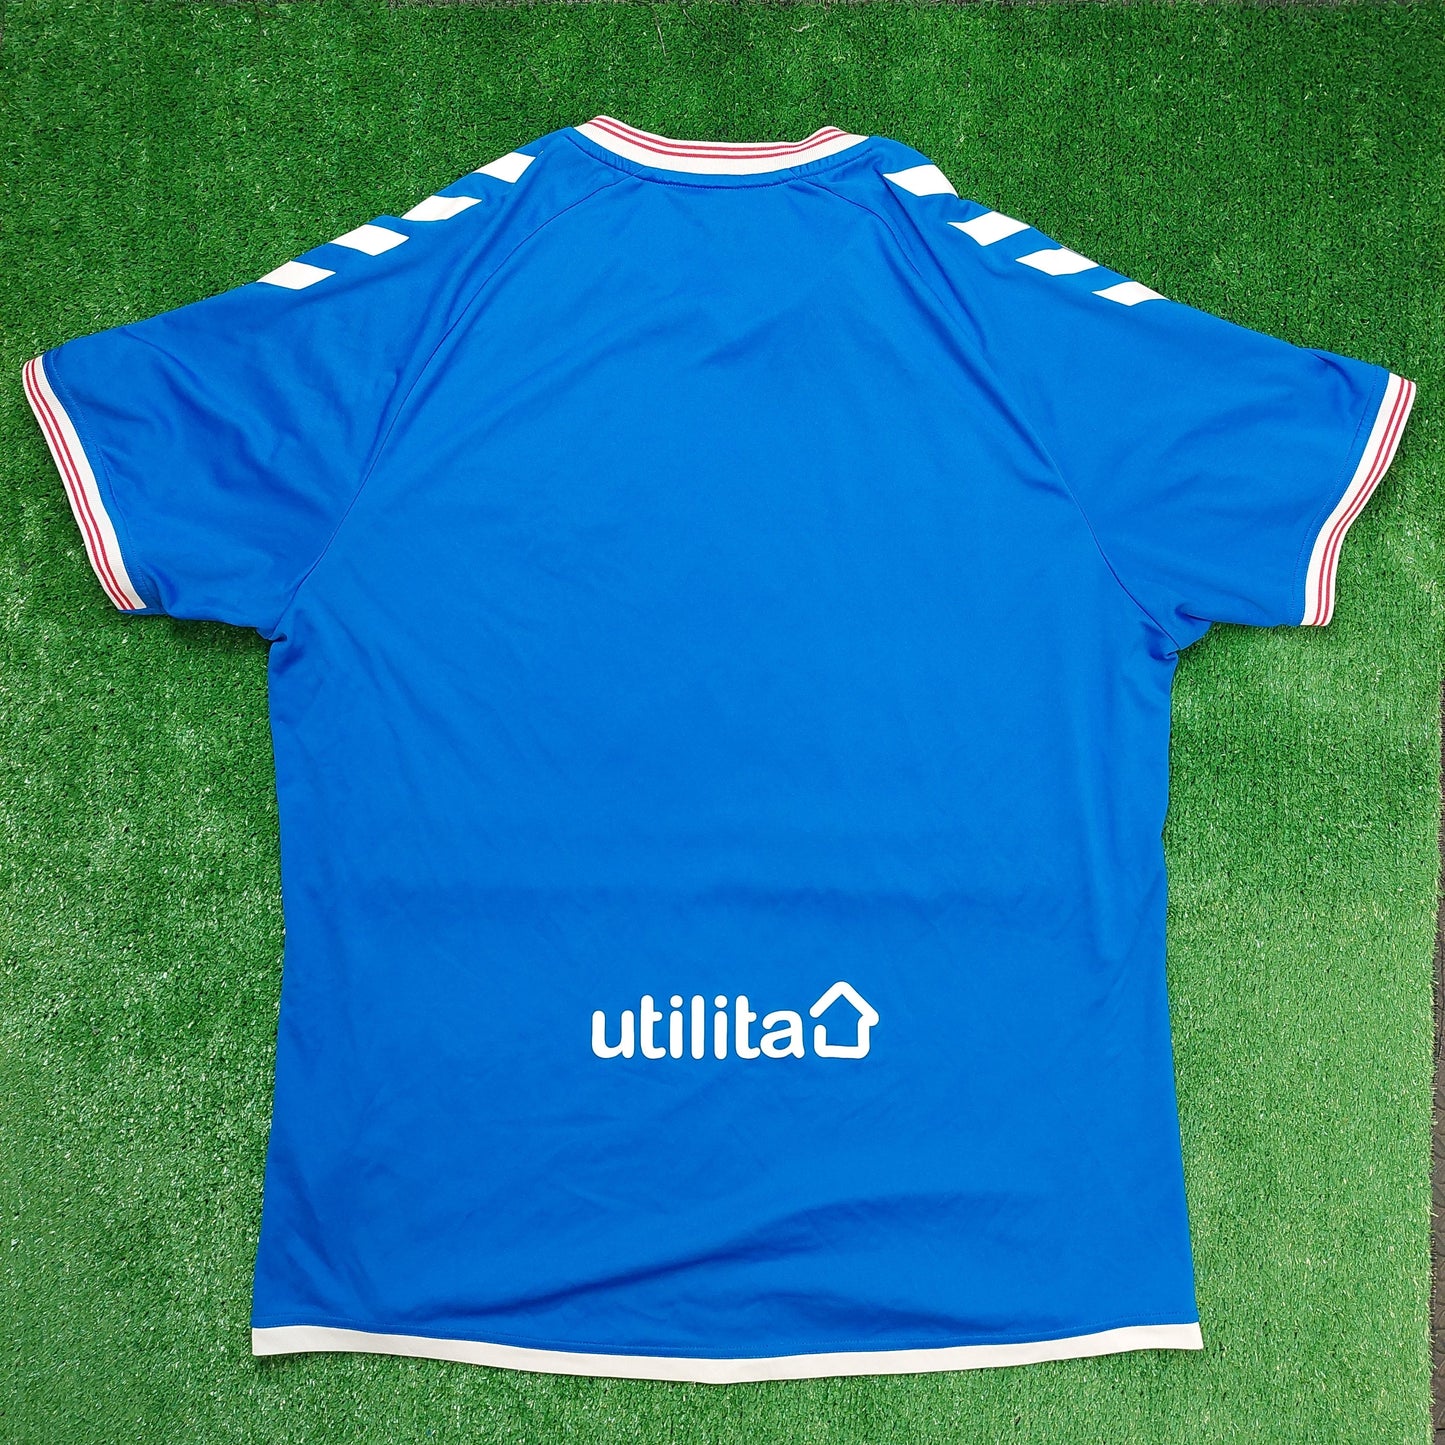 Rangers F.C. 2019/20 Home Shirt (Excellent) - Size XL